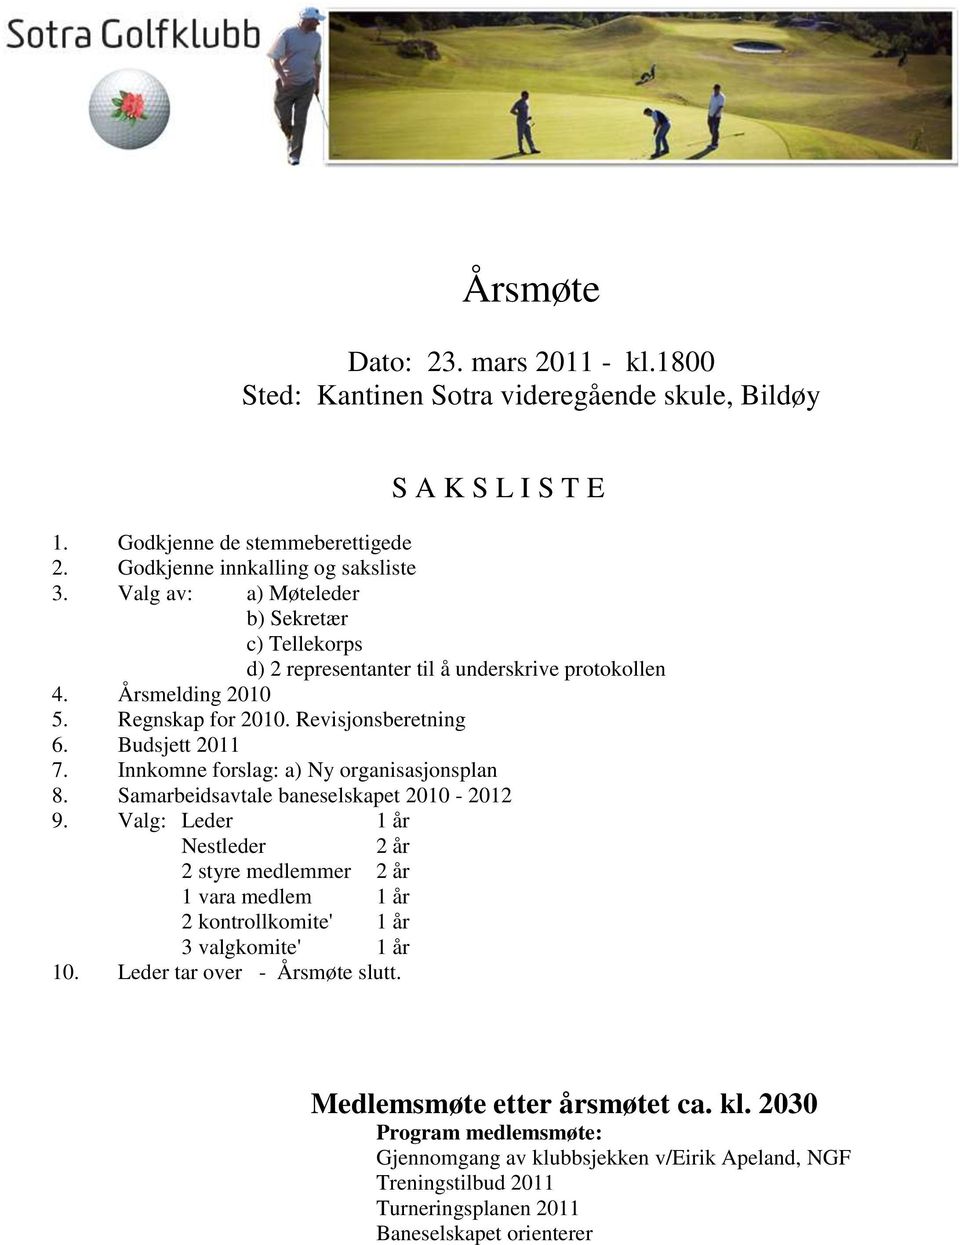 Innkomne forslag: a) Ny organisasjonsplan 8. Samarbeidsavtale baneselskapet 2010-2012 9.